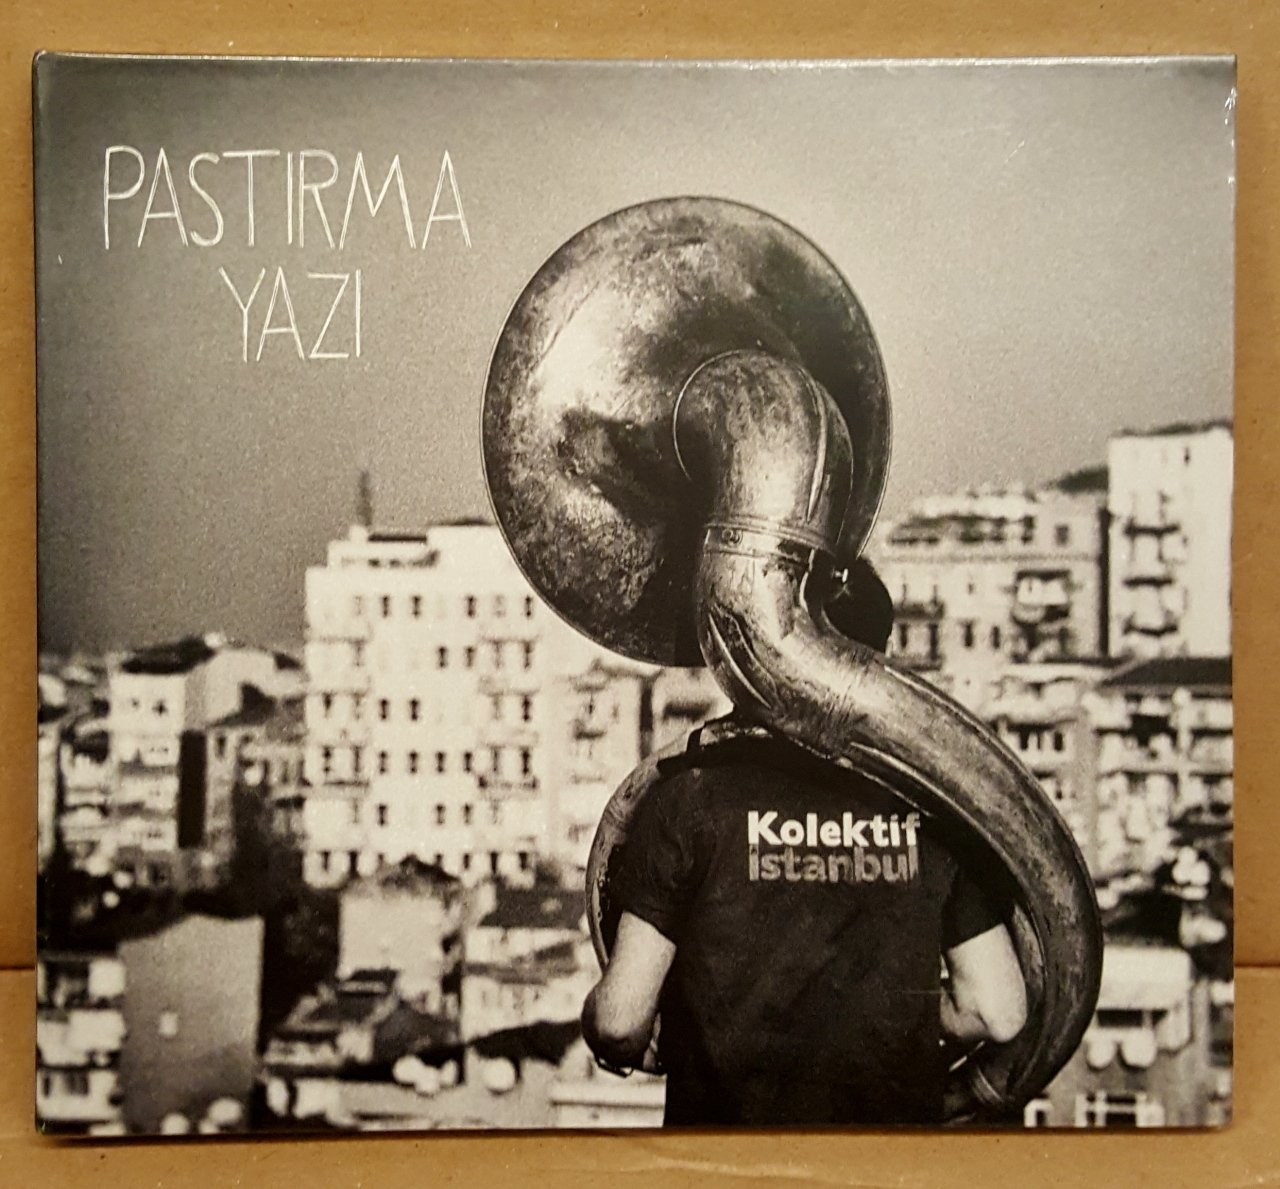 KOLEKTİF İSTANBUL - PASTIRMA YAZI (2016) - CD SIFIR